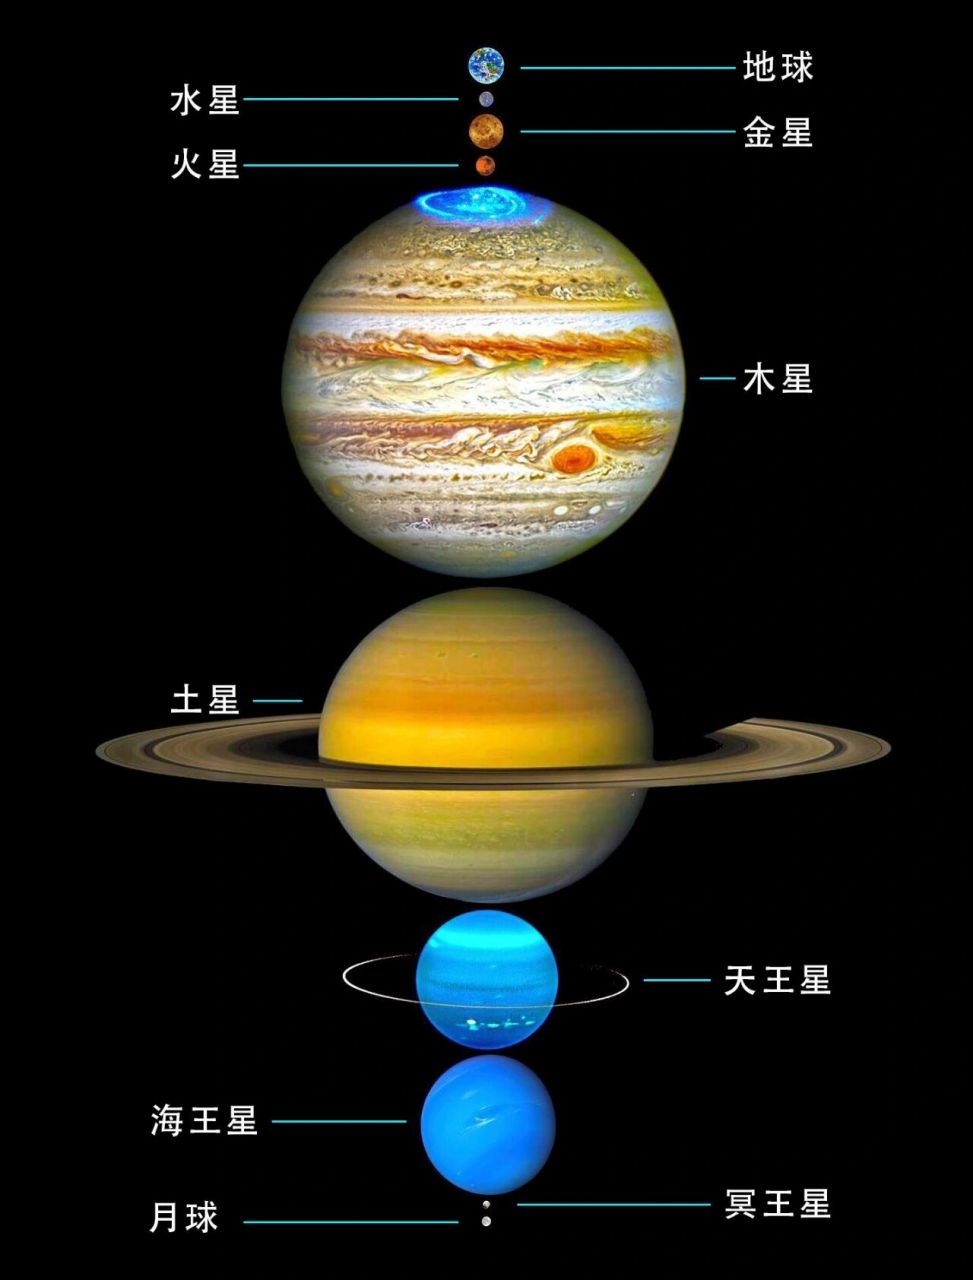 八大行星的大小排序图片